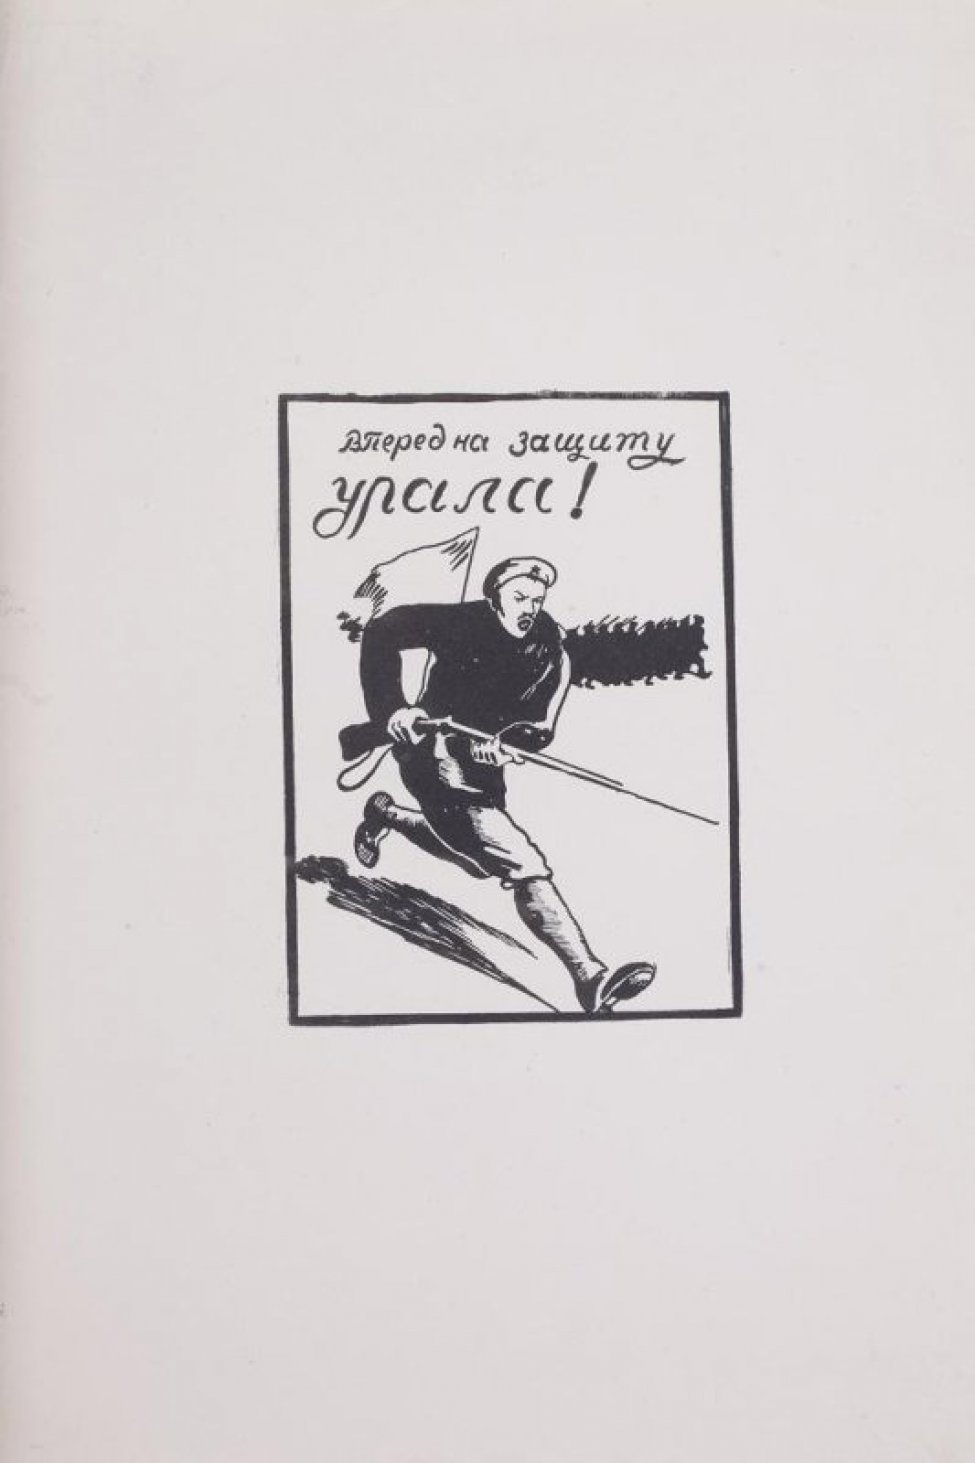 Изображен бегущий красноармеец с винтовкой, вверху надпись: "Вперед на защиту Урала""